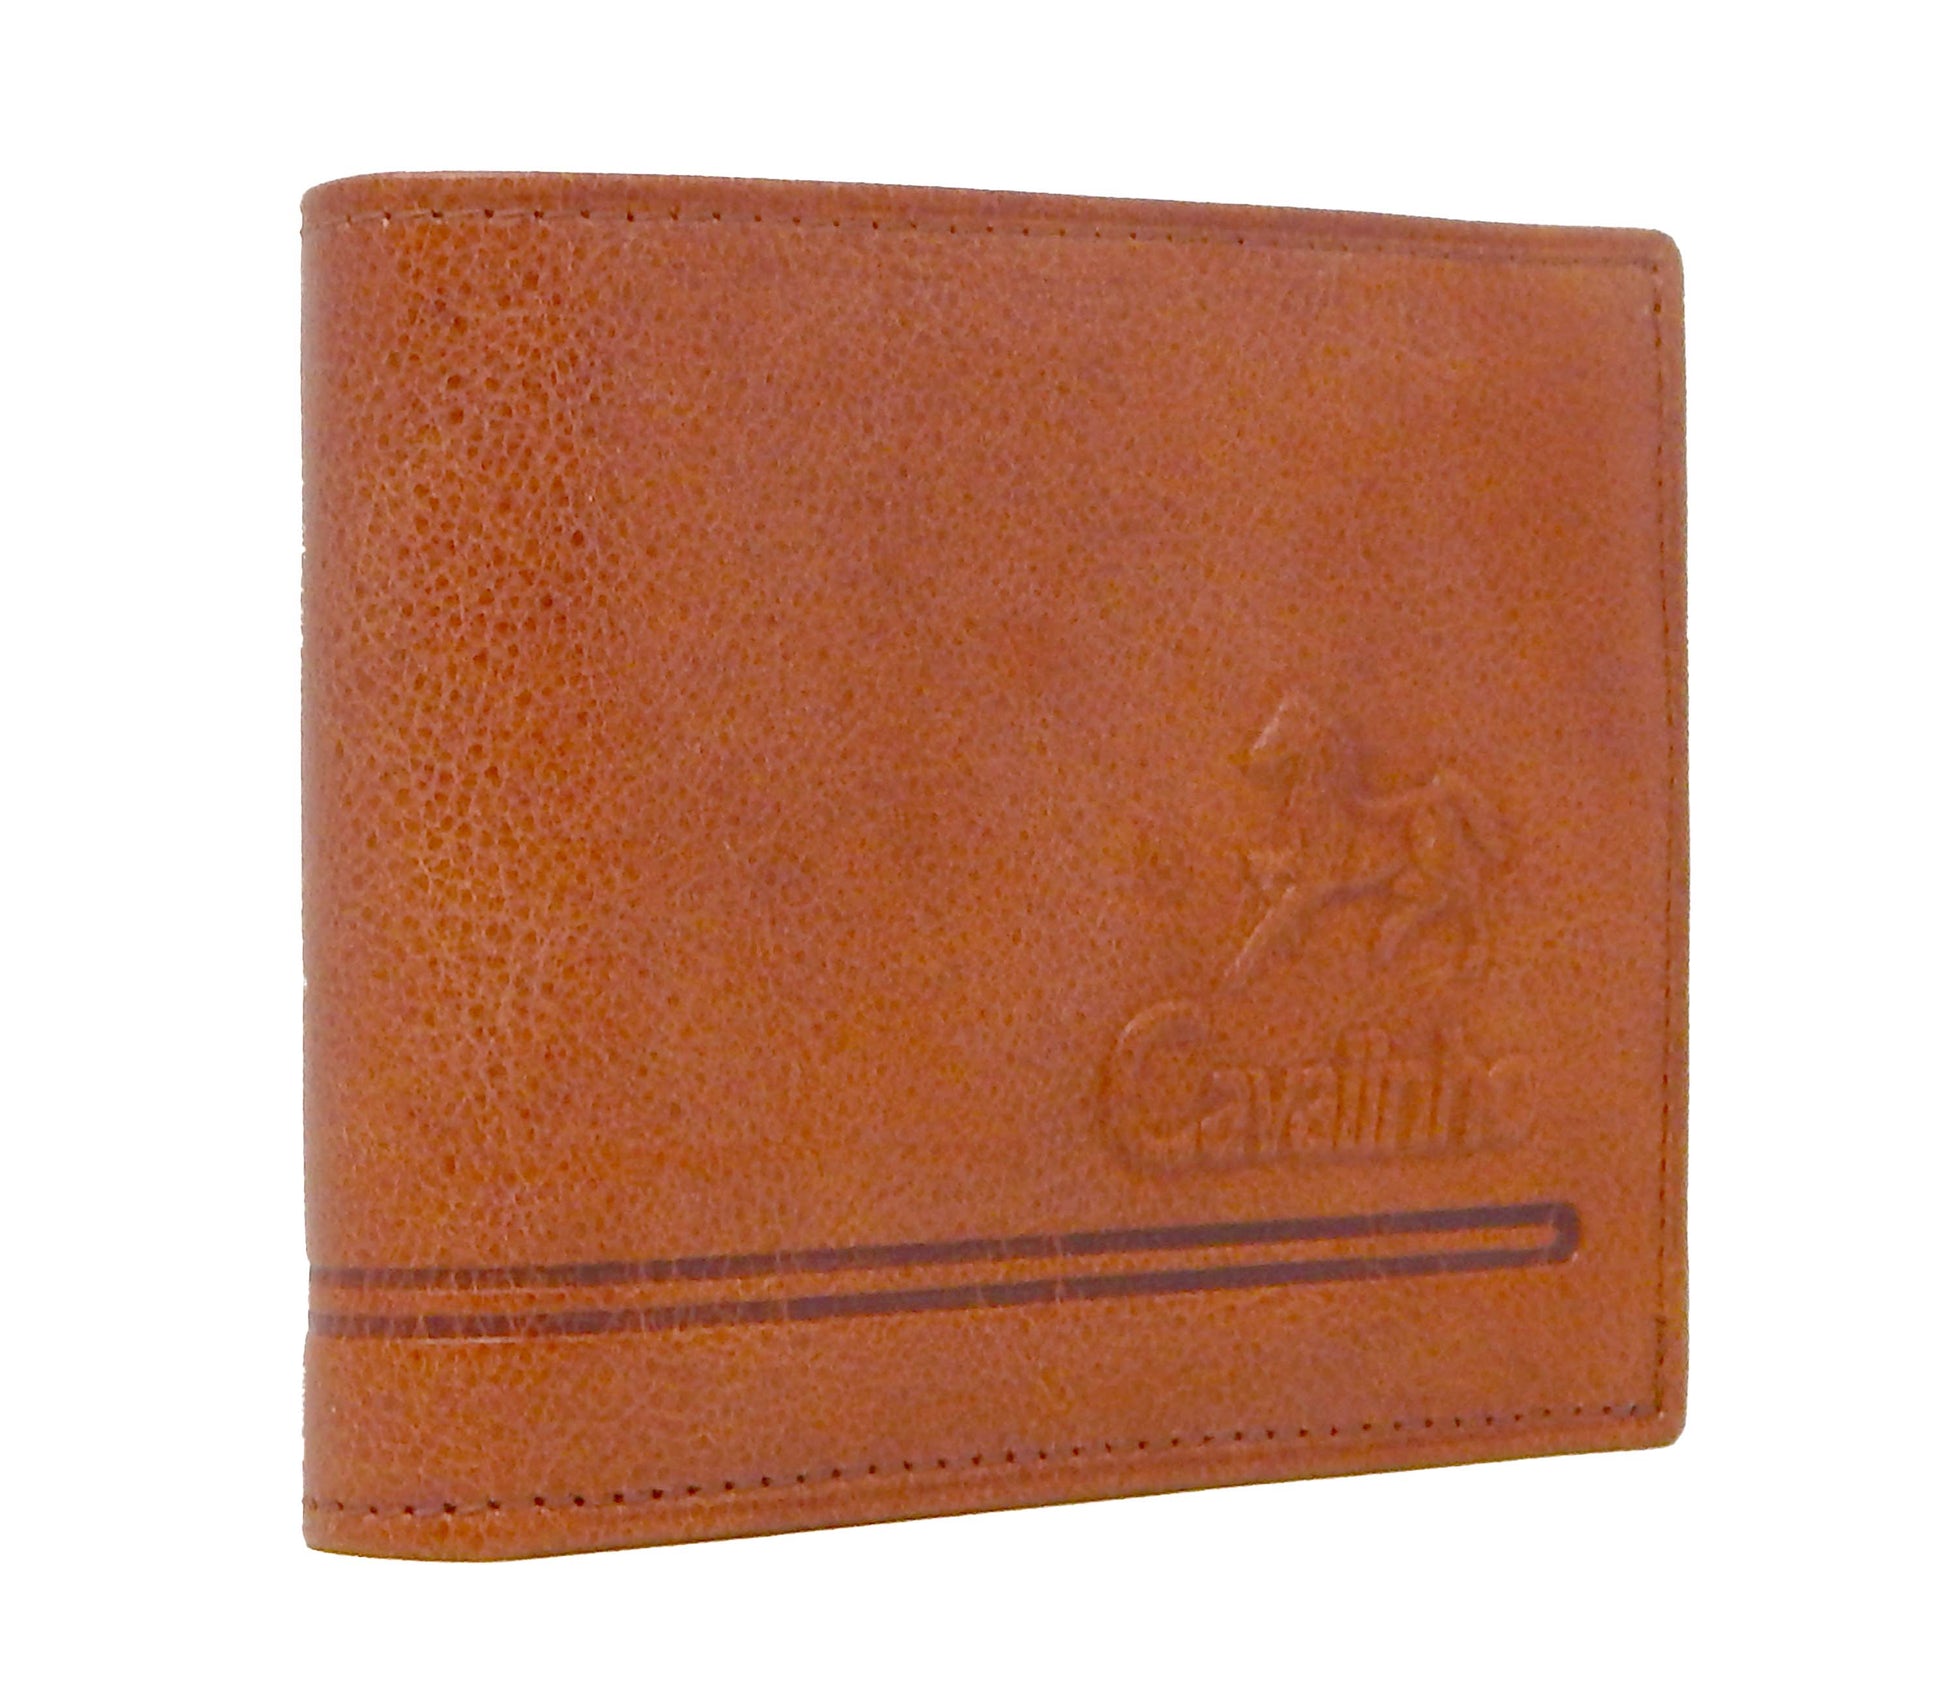 #color_ SaddleBrown | Cavalinho Men's Trifold Leather Wallet - SaddleBrown - 28610507.13.99_2